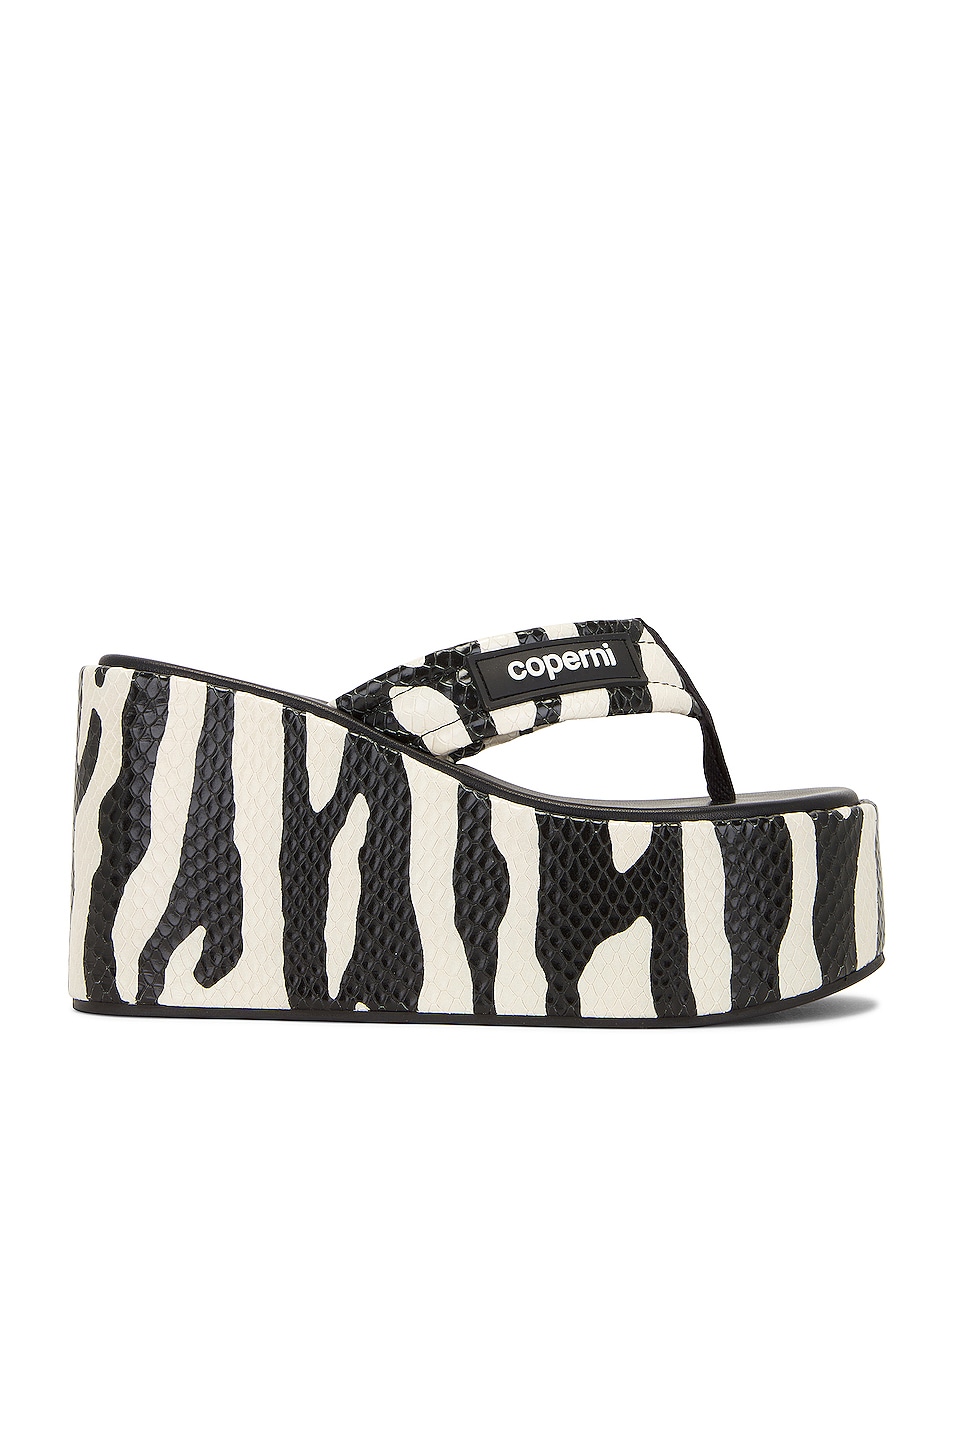 Image 1 of Coperni Zebra Branded Wedge Sandal in Black & White